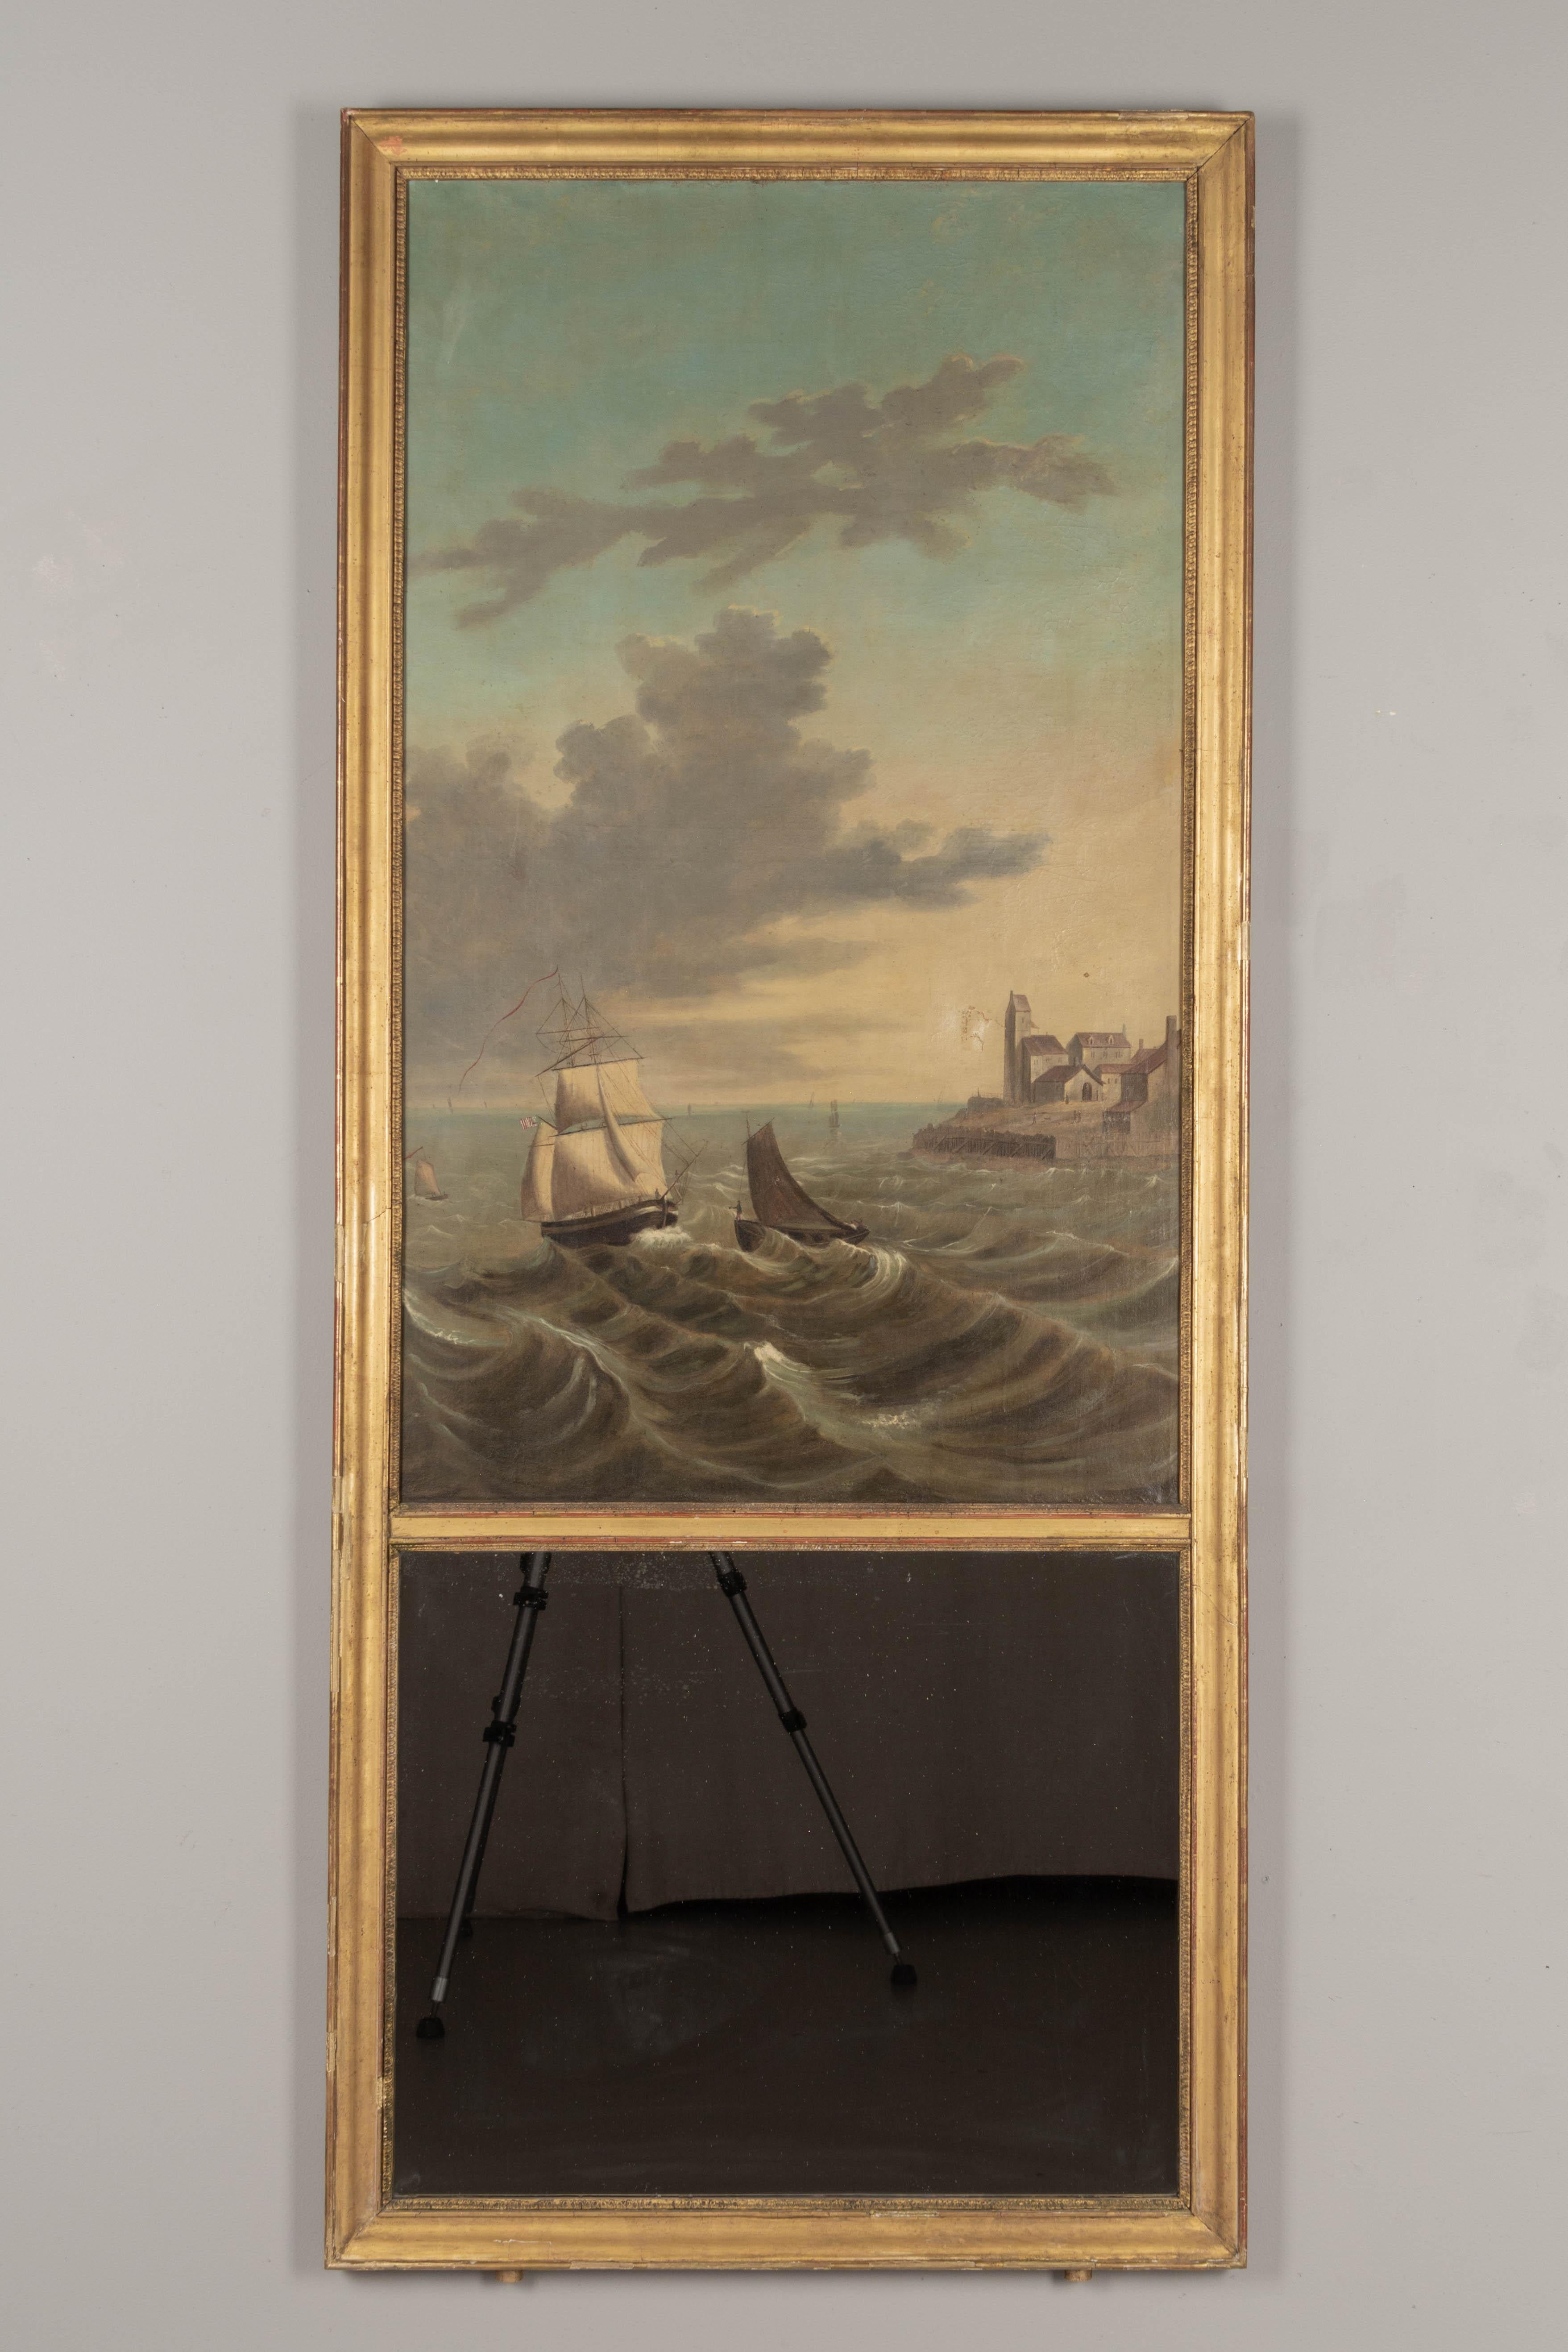 Miroir trumeau français du début du XIXe siècle de style Louis XV, orné d'une grande peinture à l'huile représentant un paysage marin avec des navires sur une côte agitée. La toile présente une ancienne déchirure réparée et a été doublée à un moment